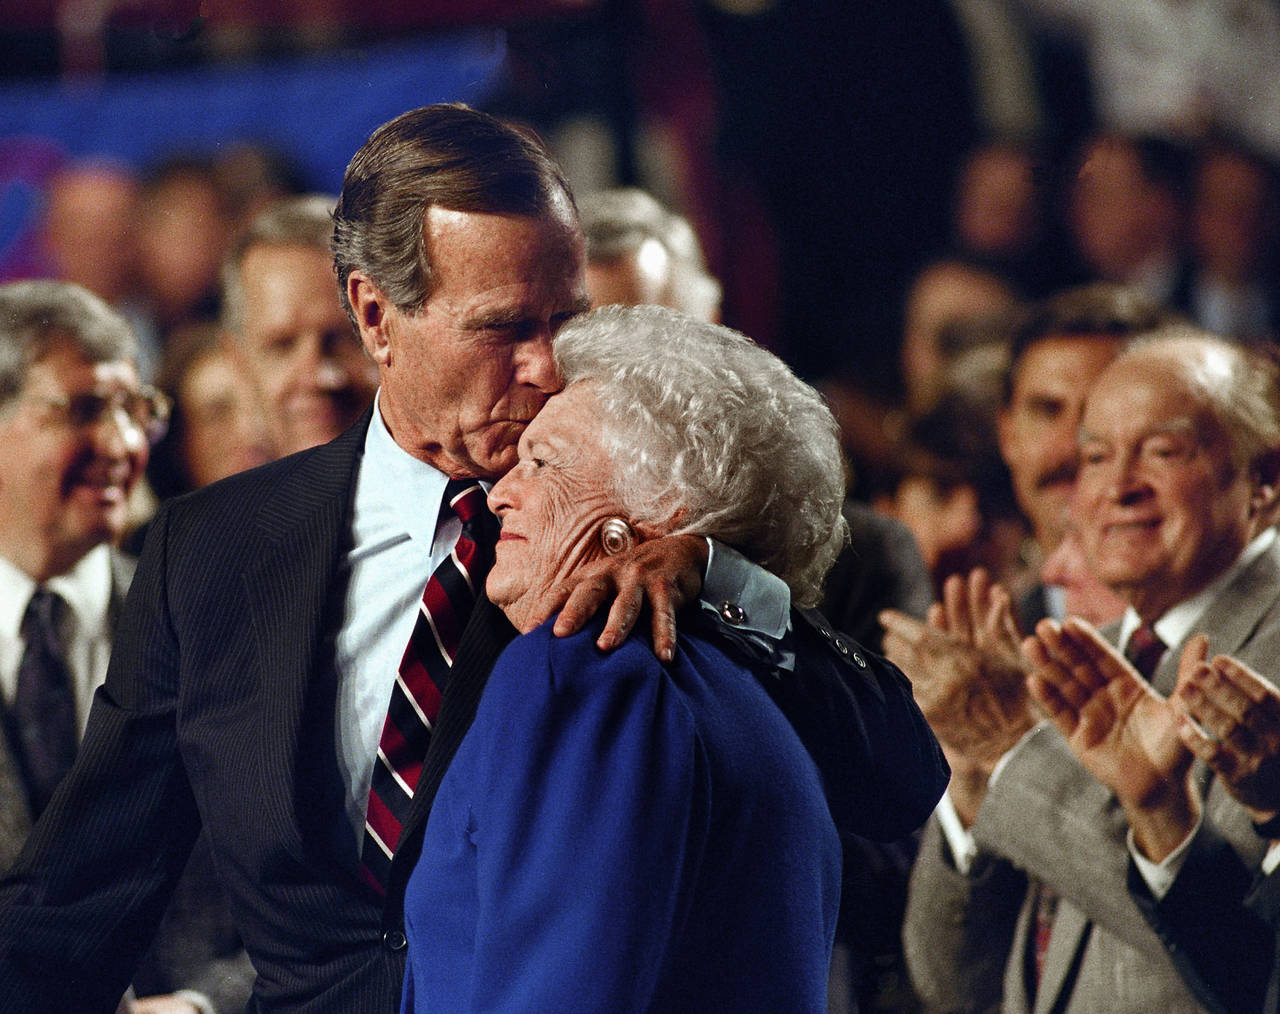 Deceso. La exprimera dama de EU Barbara Bush falleció a los 92 años de edad, informó un portavoz de la familia. (AP)